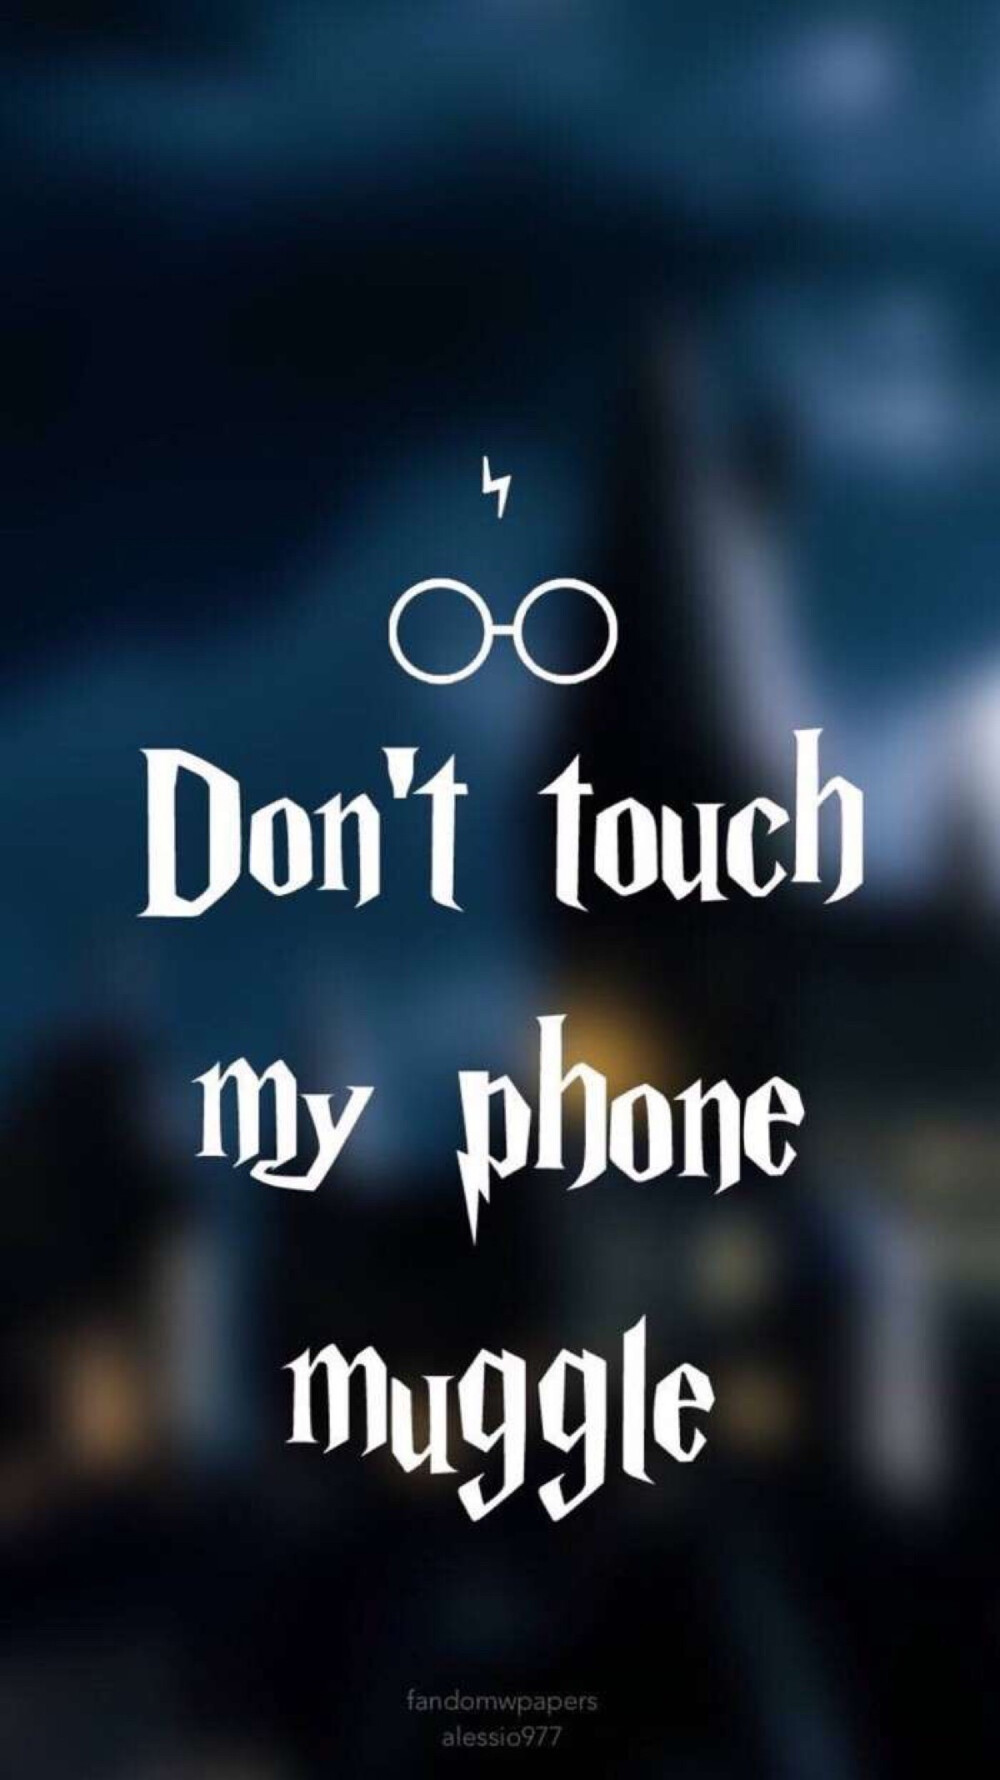 哈利波特手机背景图图片